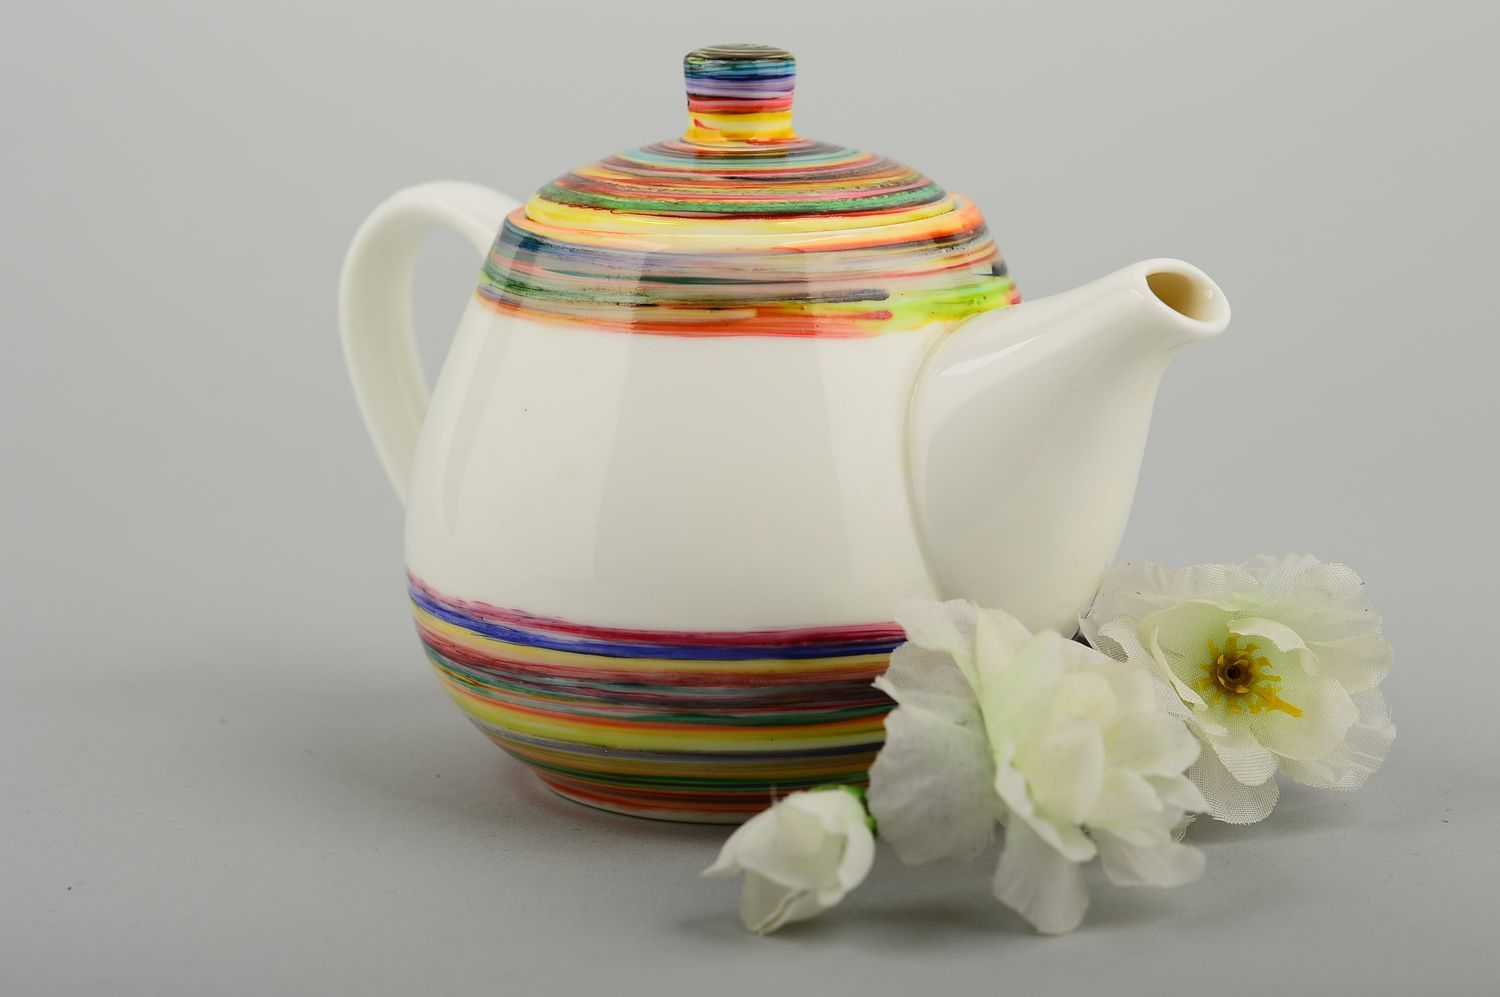 Заварной чайник ручной работы керамический чайник цветной заварник для чая фото 1